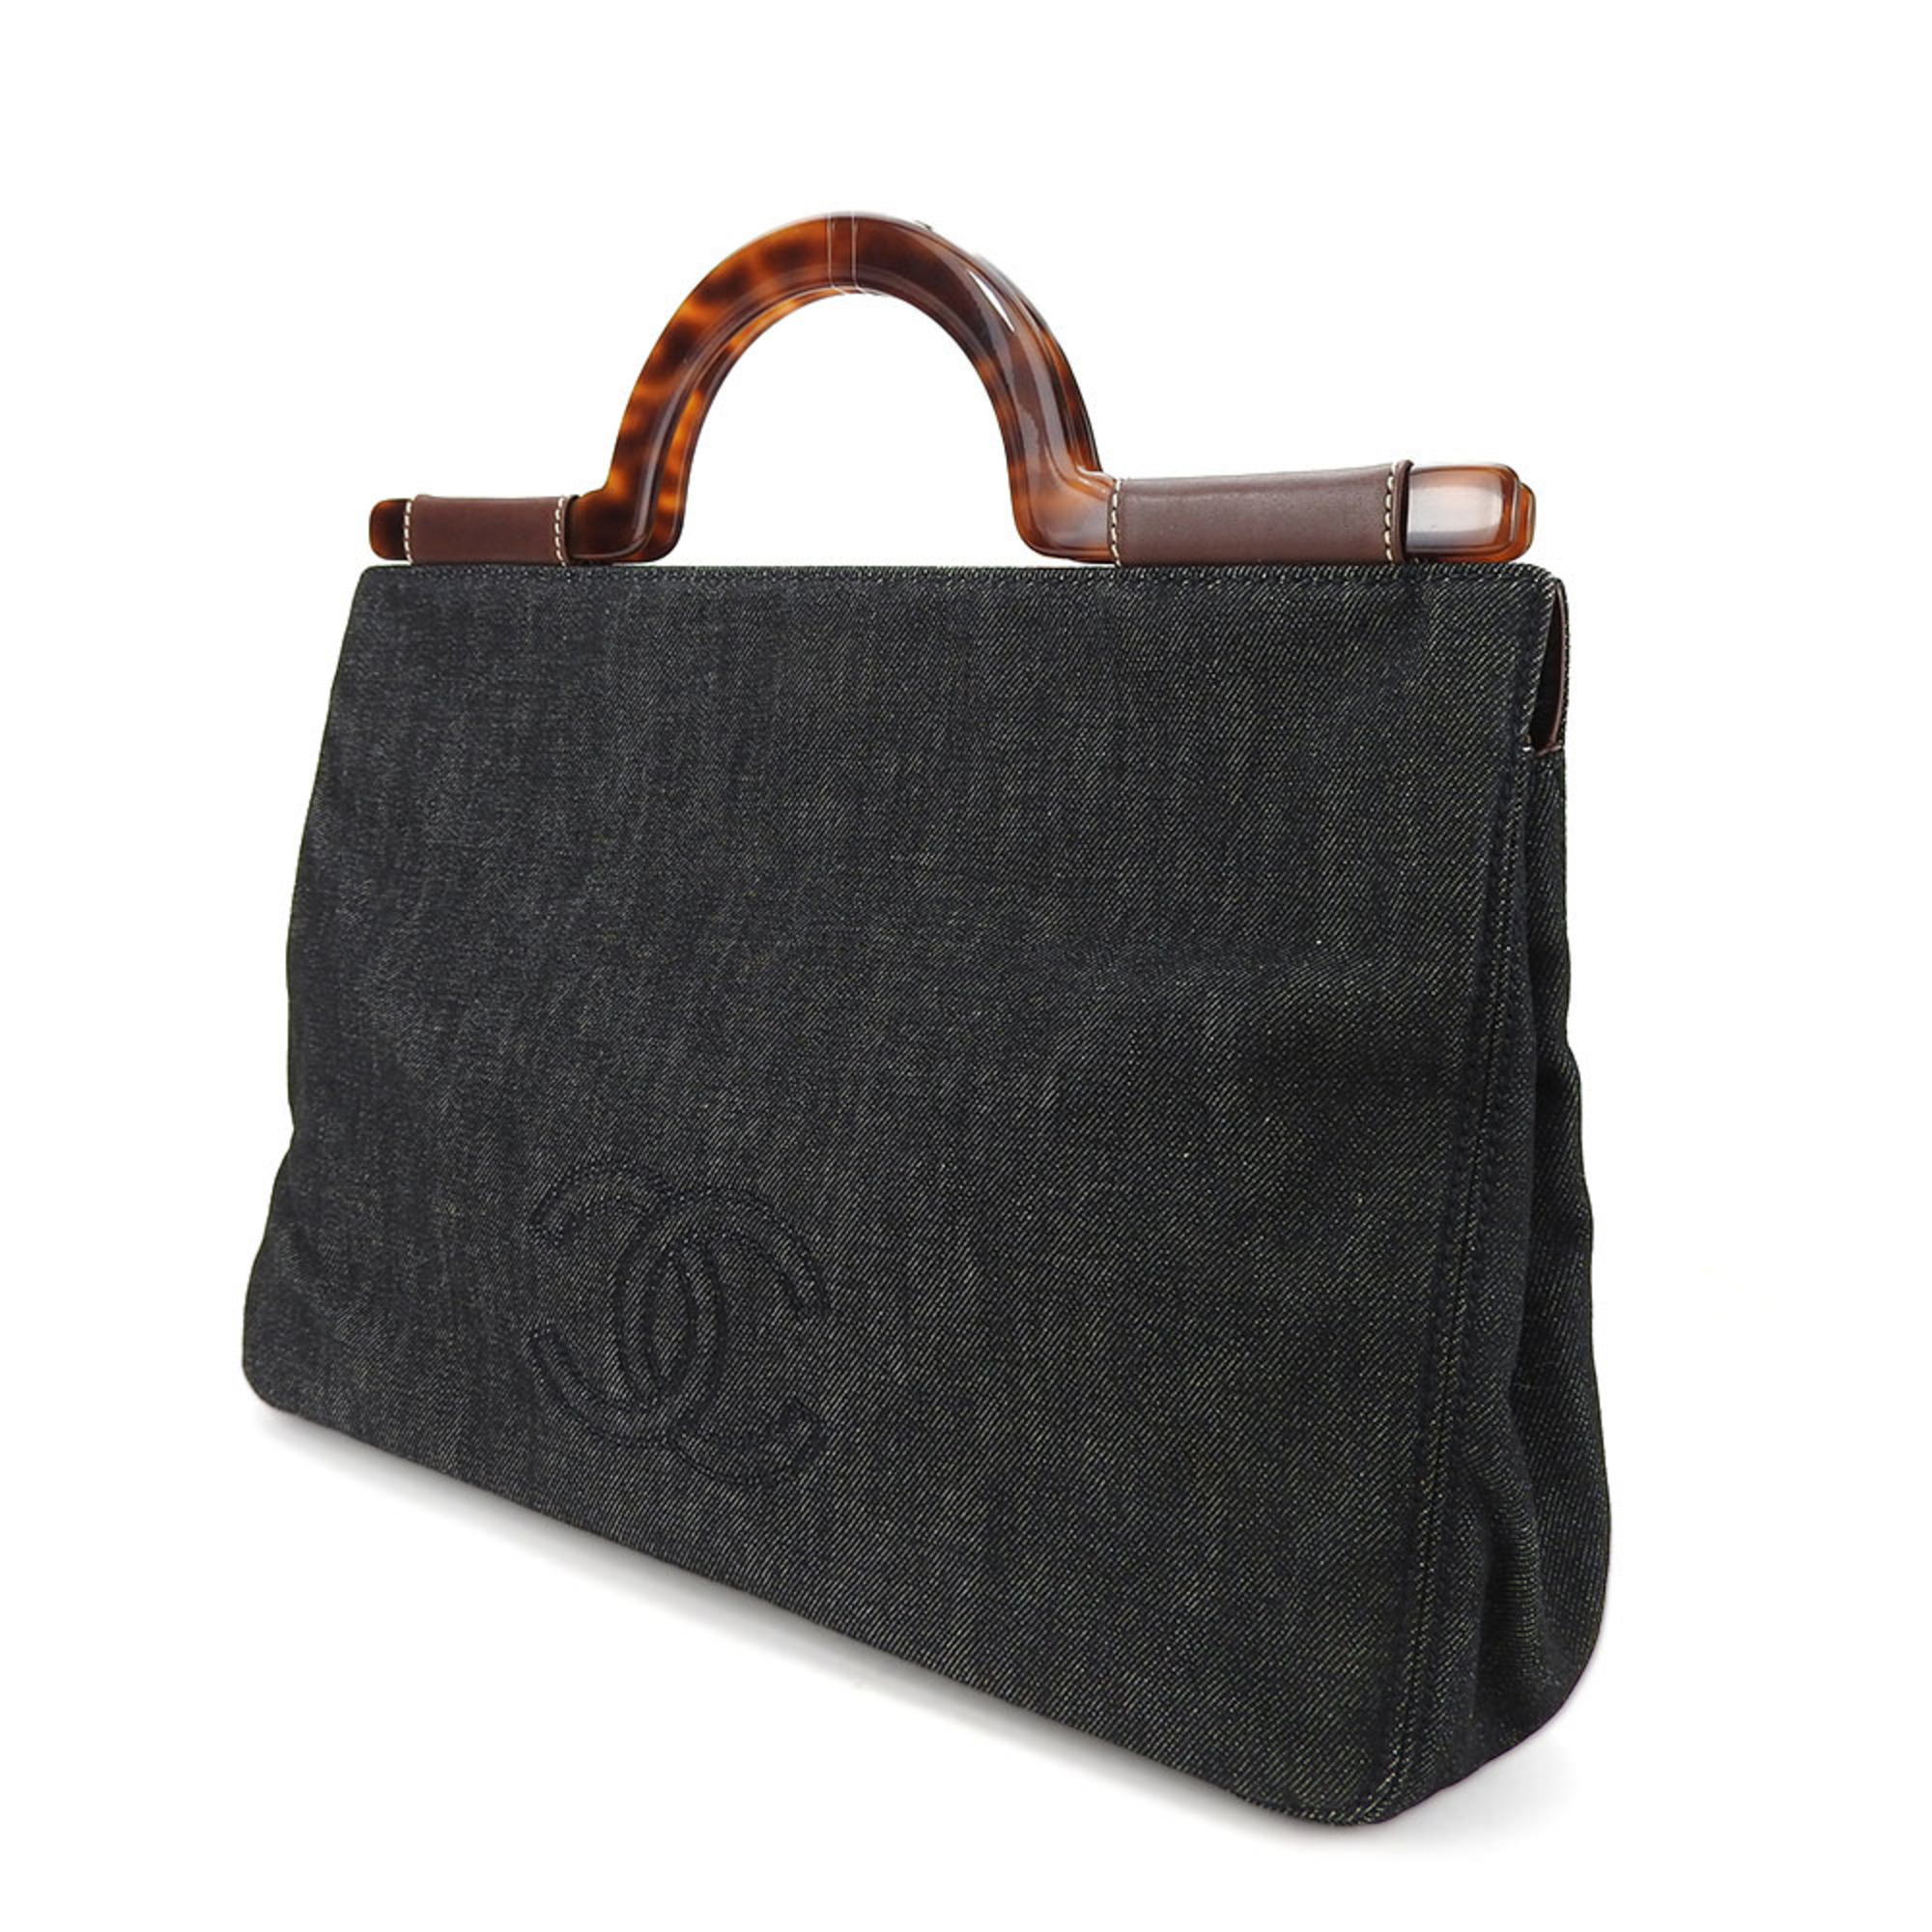 Chanel handbag denim black tortoiseshell coco mark ladies CHANEL